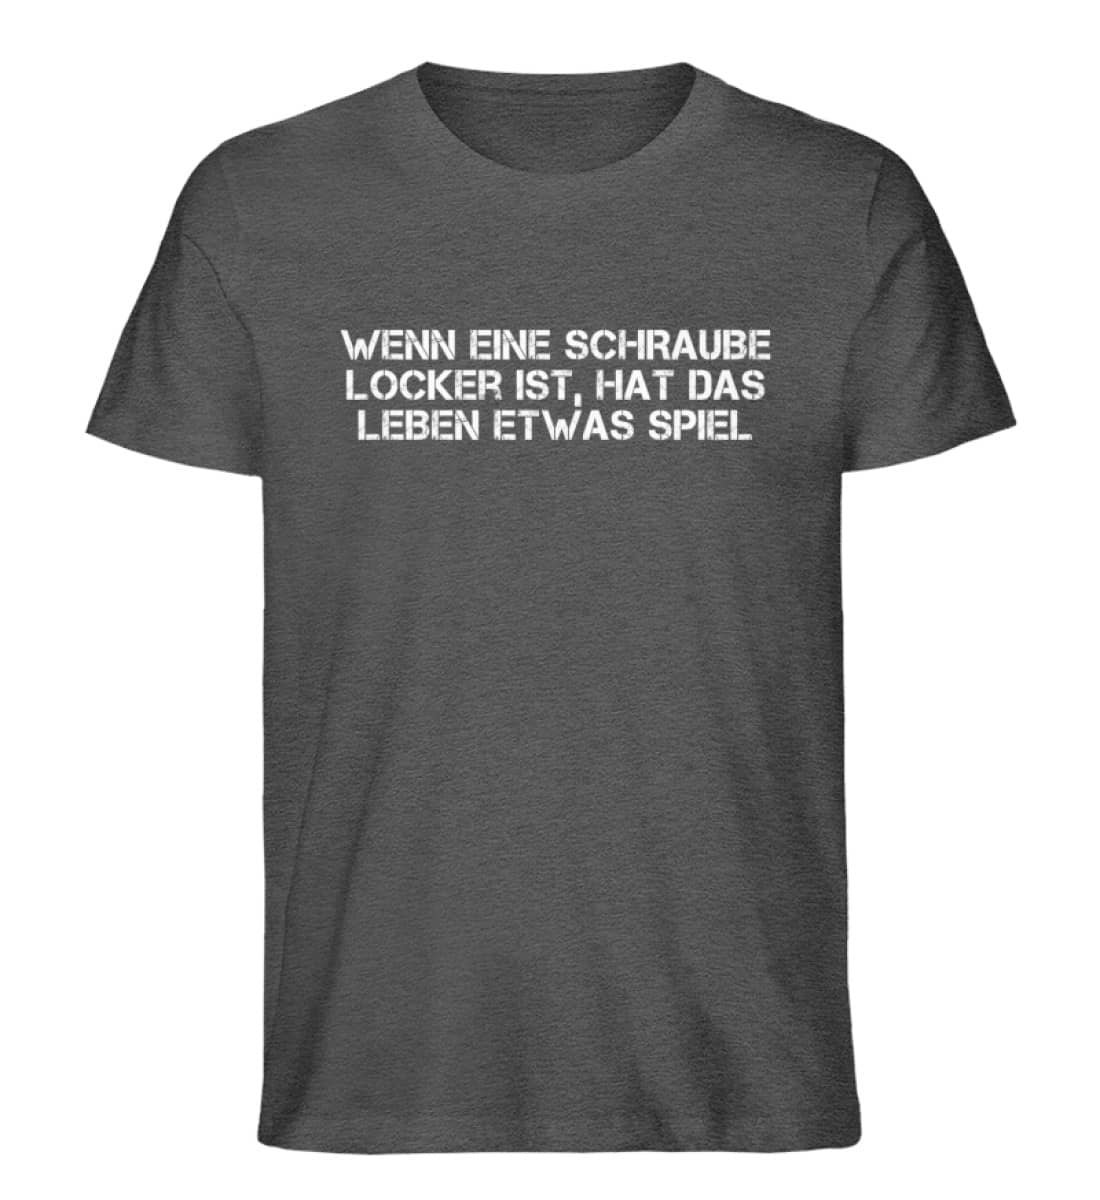 Schraube locker - Herren Organic Melange Shirt-6898